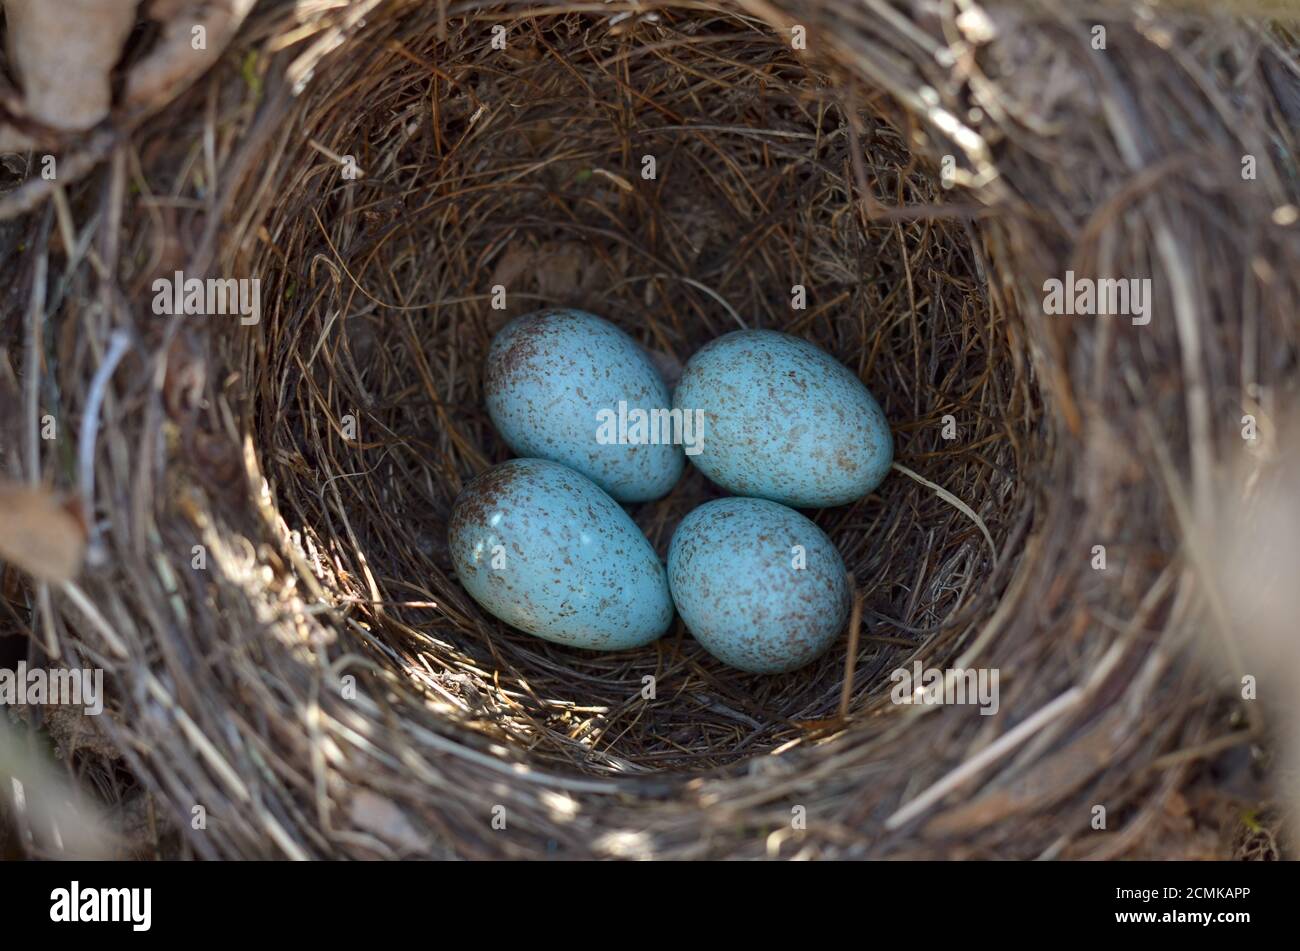 Das Nest der eurasischen Amsel - Turdus merula. Vier türkisfarbene gesprenkelte Eier in einem gemeinsamen Amsel-Nest in ihrem natürlichen Lebensraum. Stockfoto